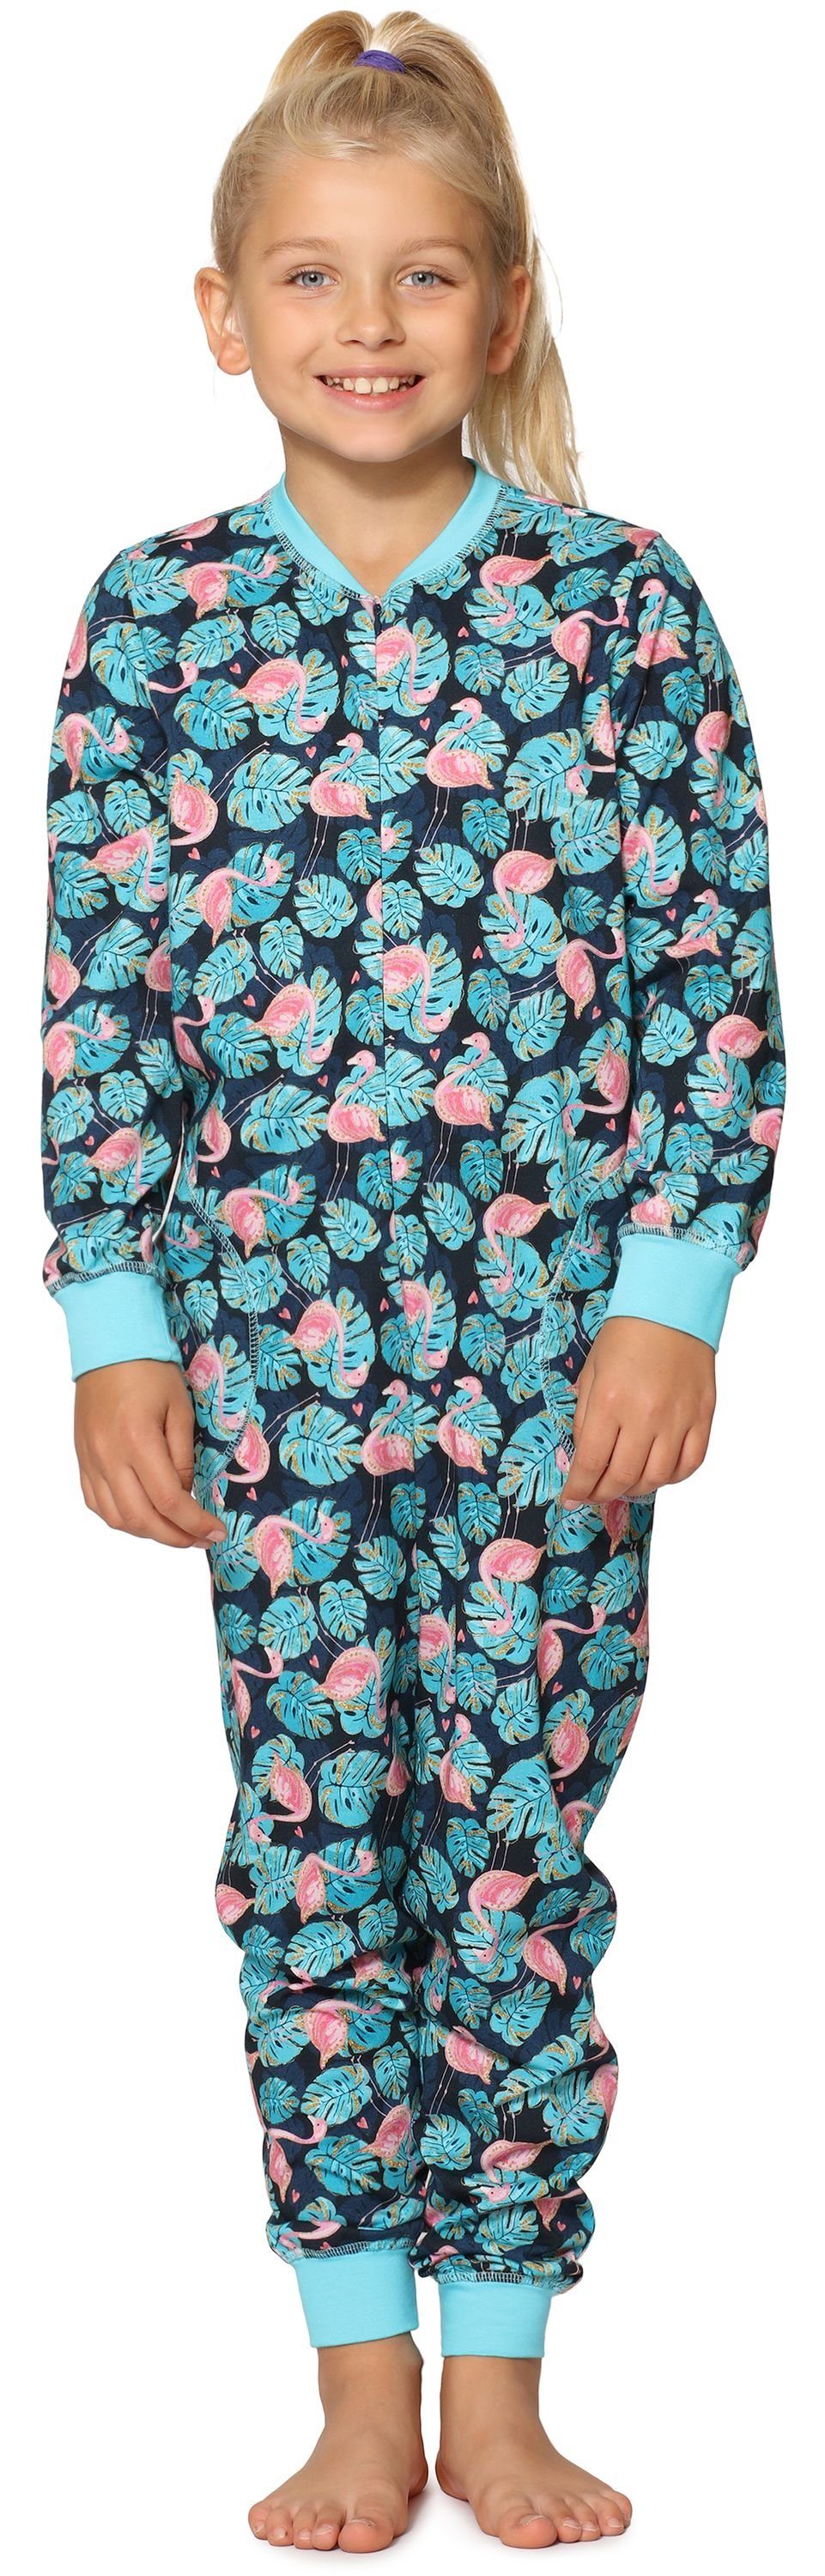 Jumpsuit MS10-186 Türkis Flamingos Schlafanzug Schlafanzug Style Merry Mädchen